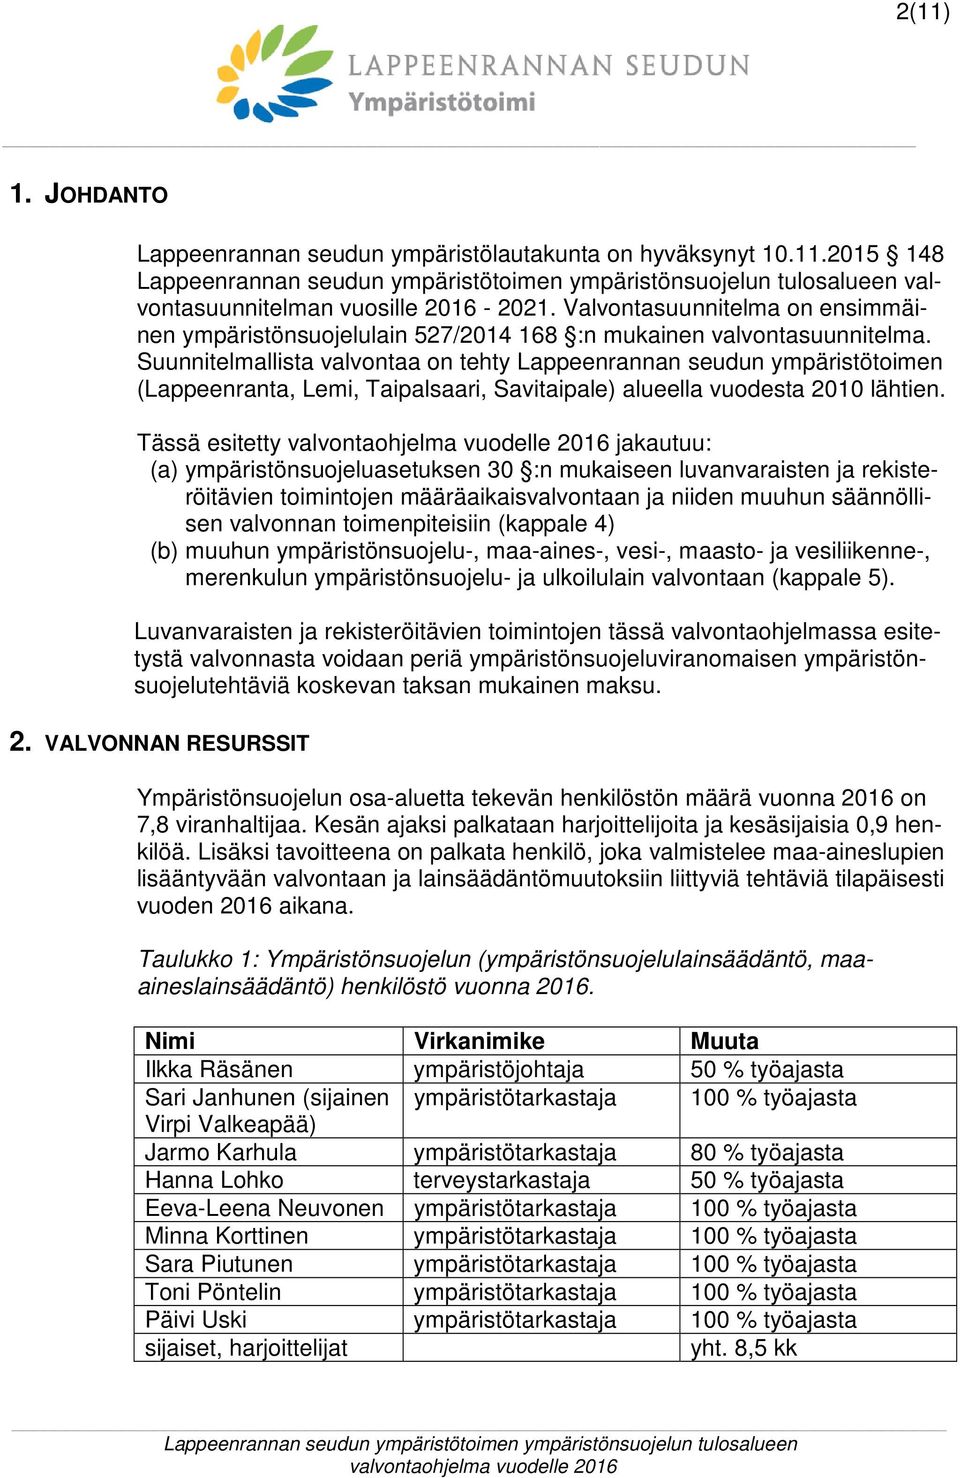 Suunnitelmallista valvontaa on tehty Lappeenrannan seudun ympäristötoimen (Lappeenranta, Lemi, Taipalsaari, Savitaipale) alueella vuodesta 2010 lähtien.